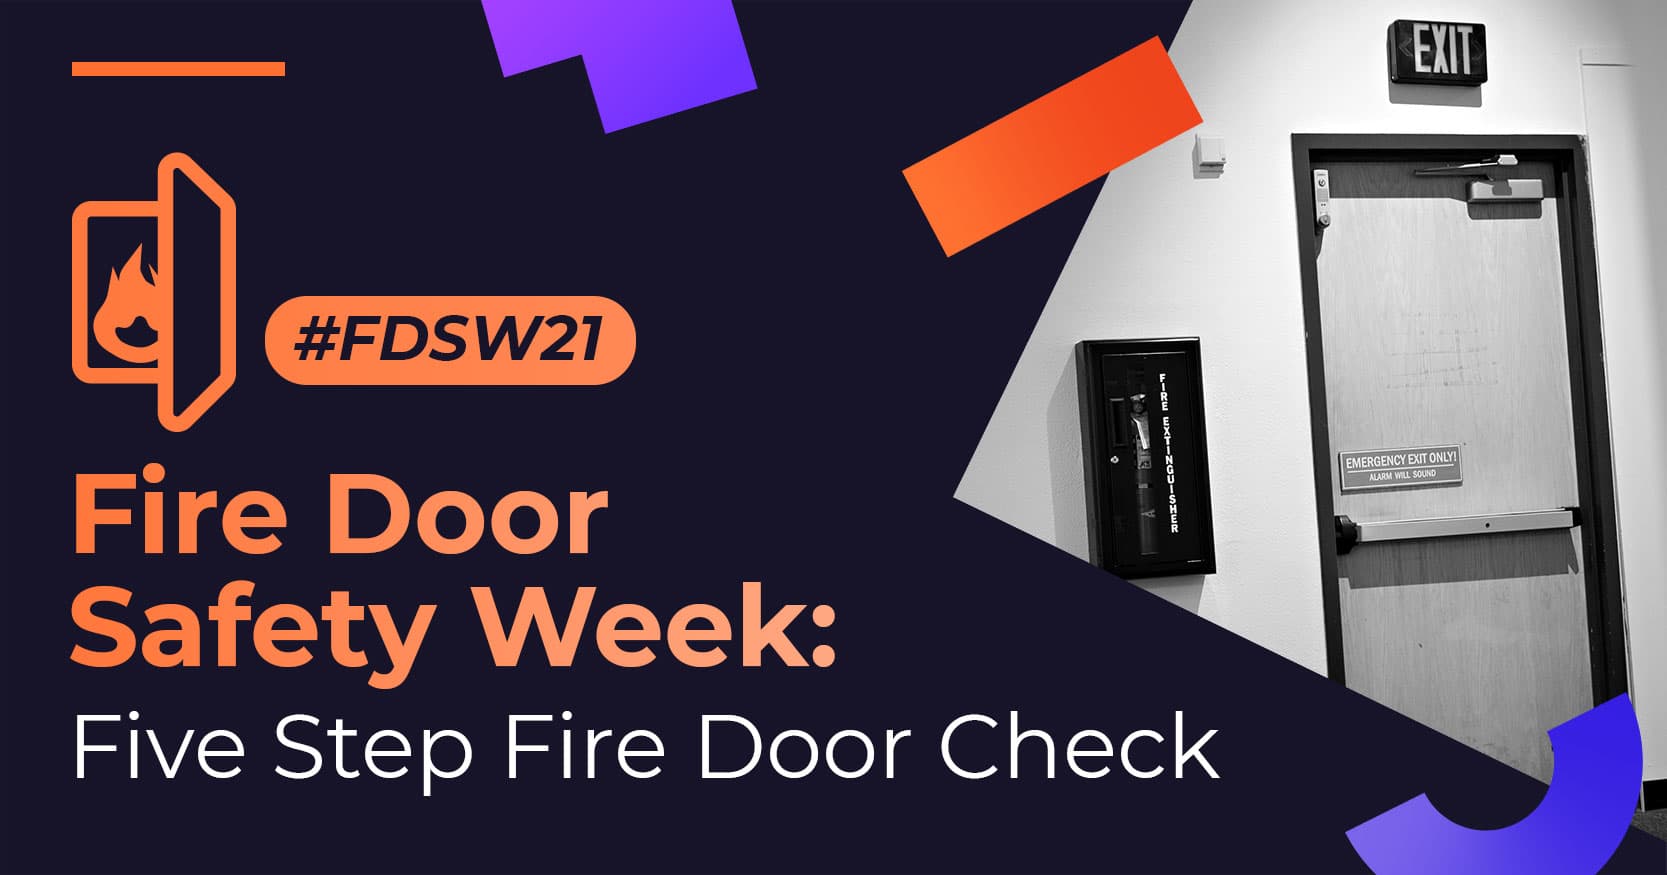 Fire Door Safety Week: Five Step Fire Door Check Image